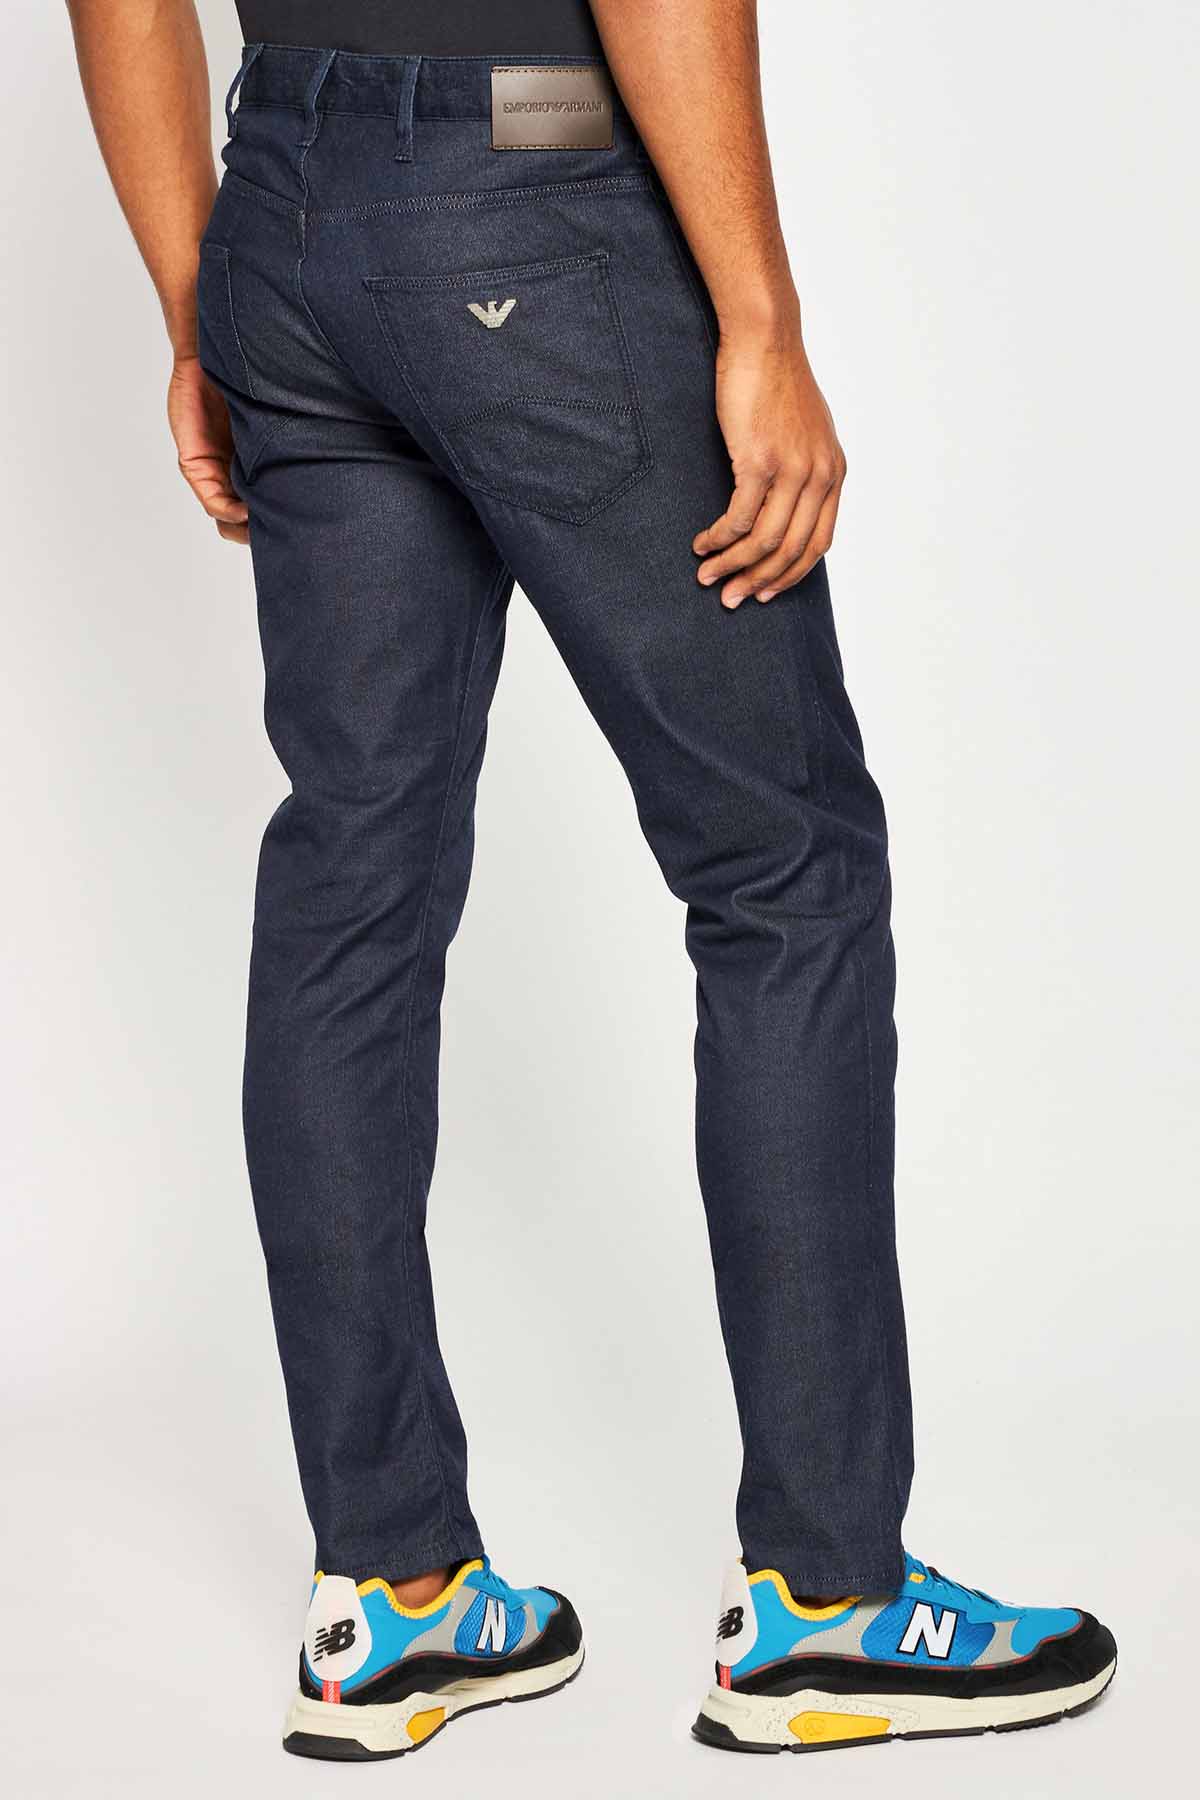 Pantalón de la marca Emporio Armani de color Jeans